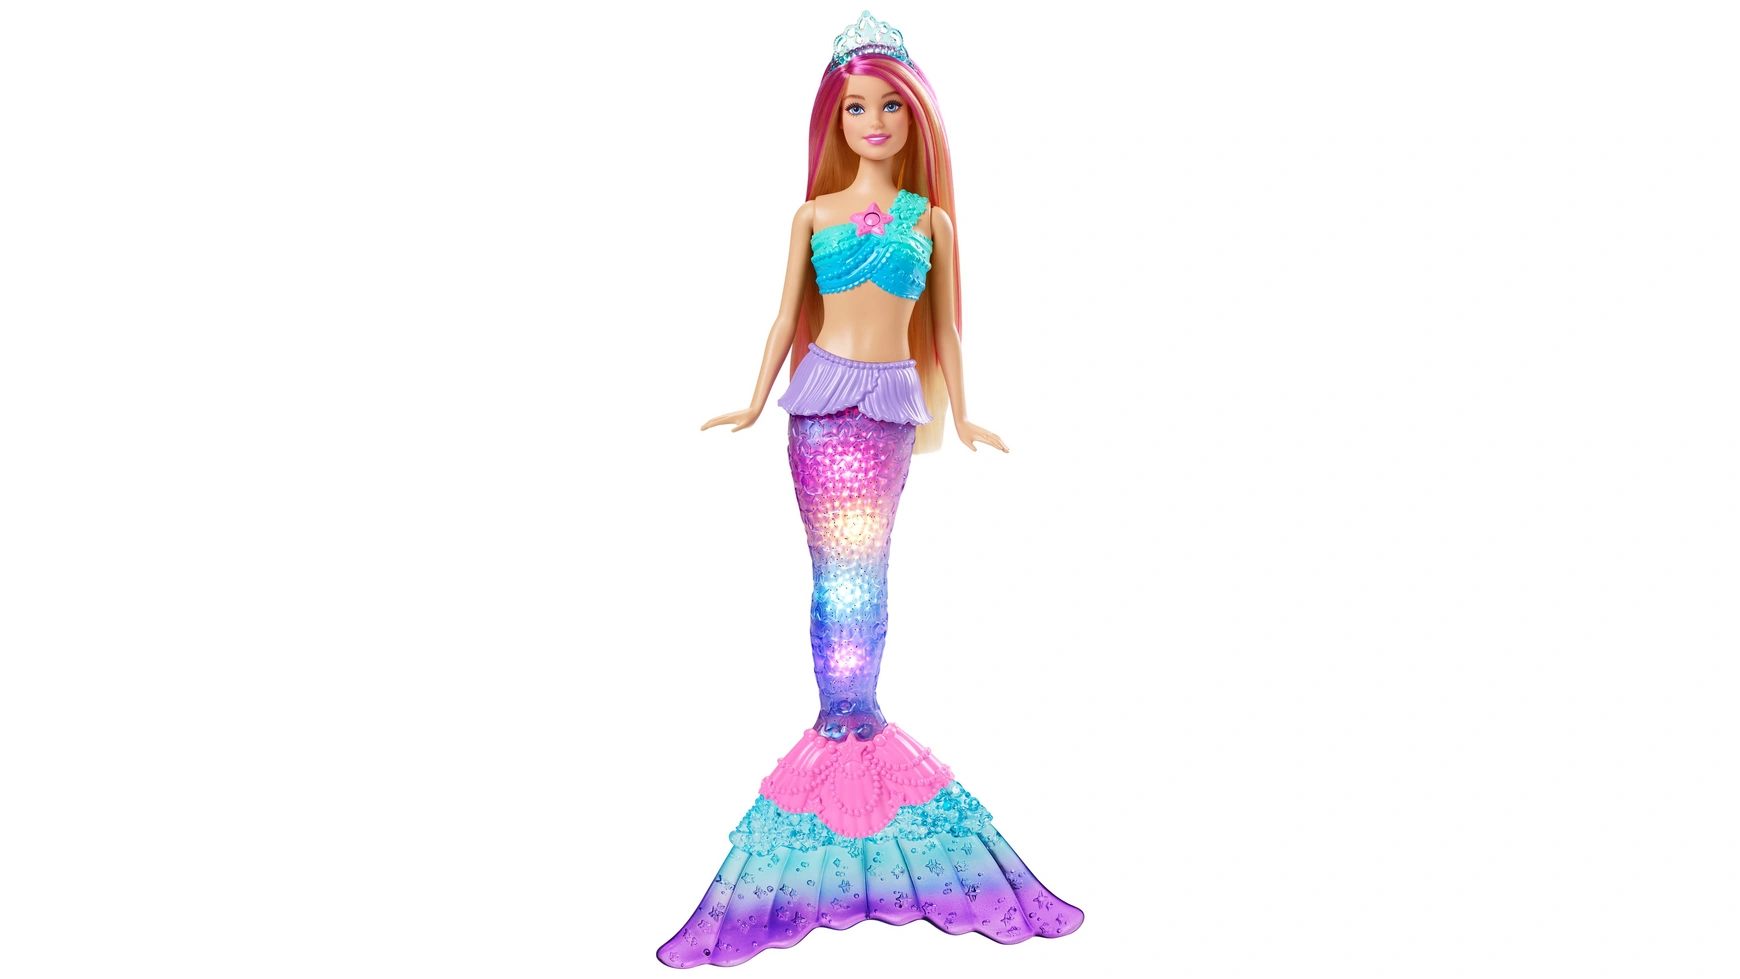 Кукла Barbie Волшебная светящаяся русалка (загорается), Barbie Dreamtopia кукла barbie dreamtopia mermaid fjc89